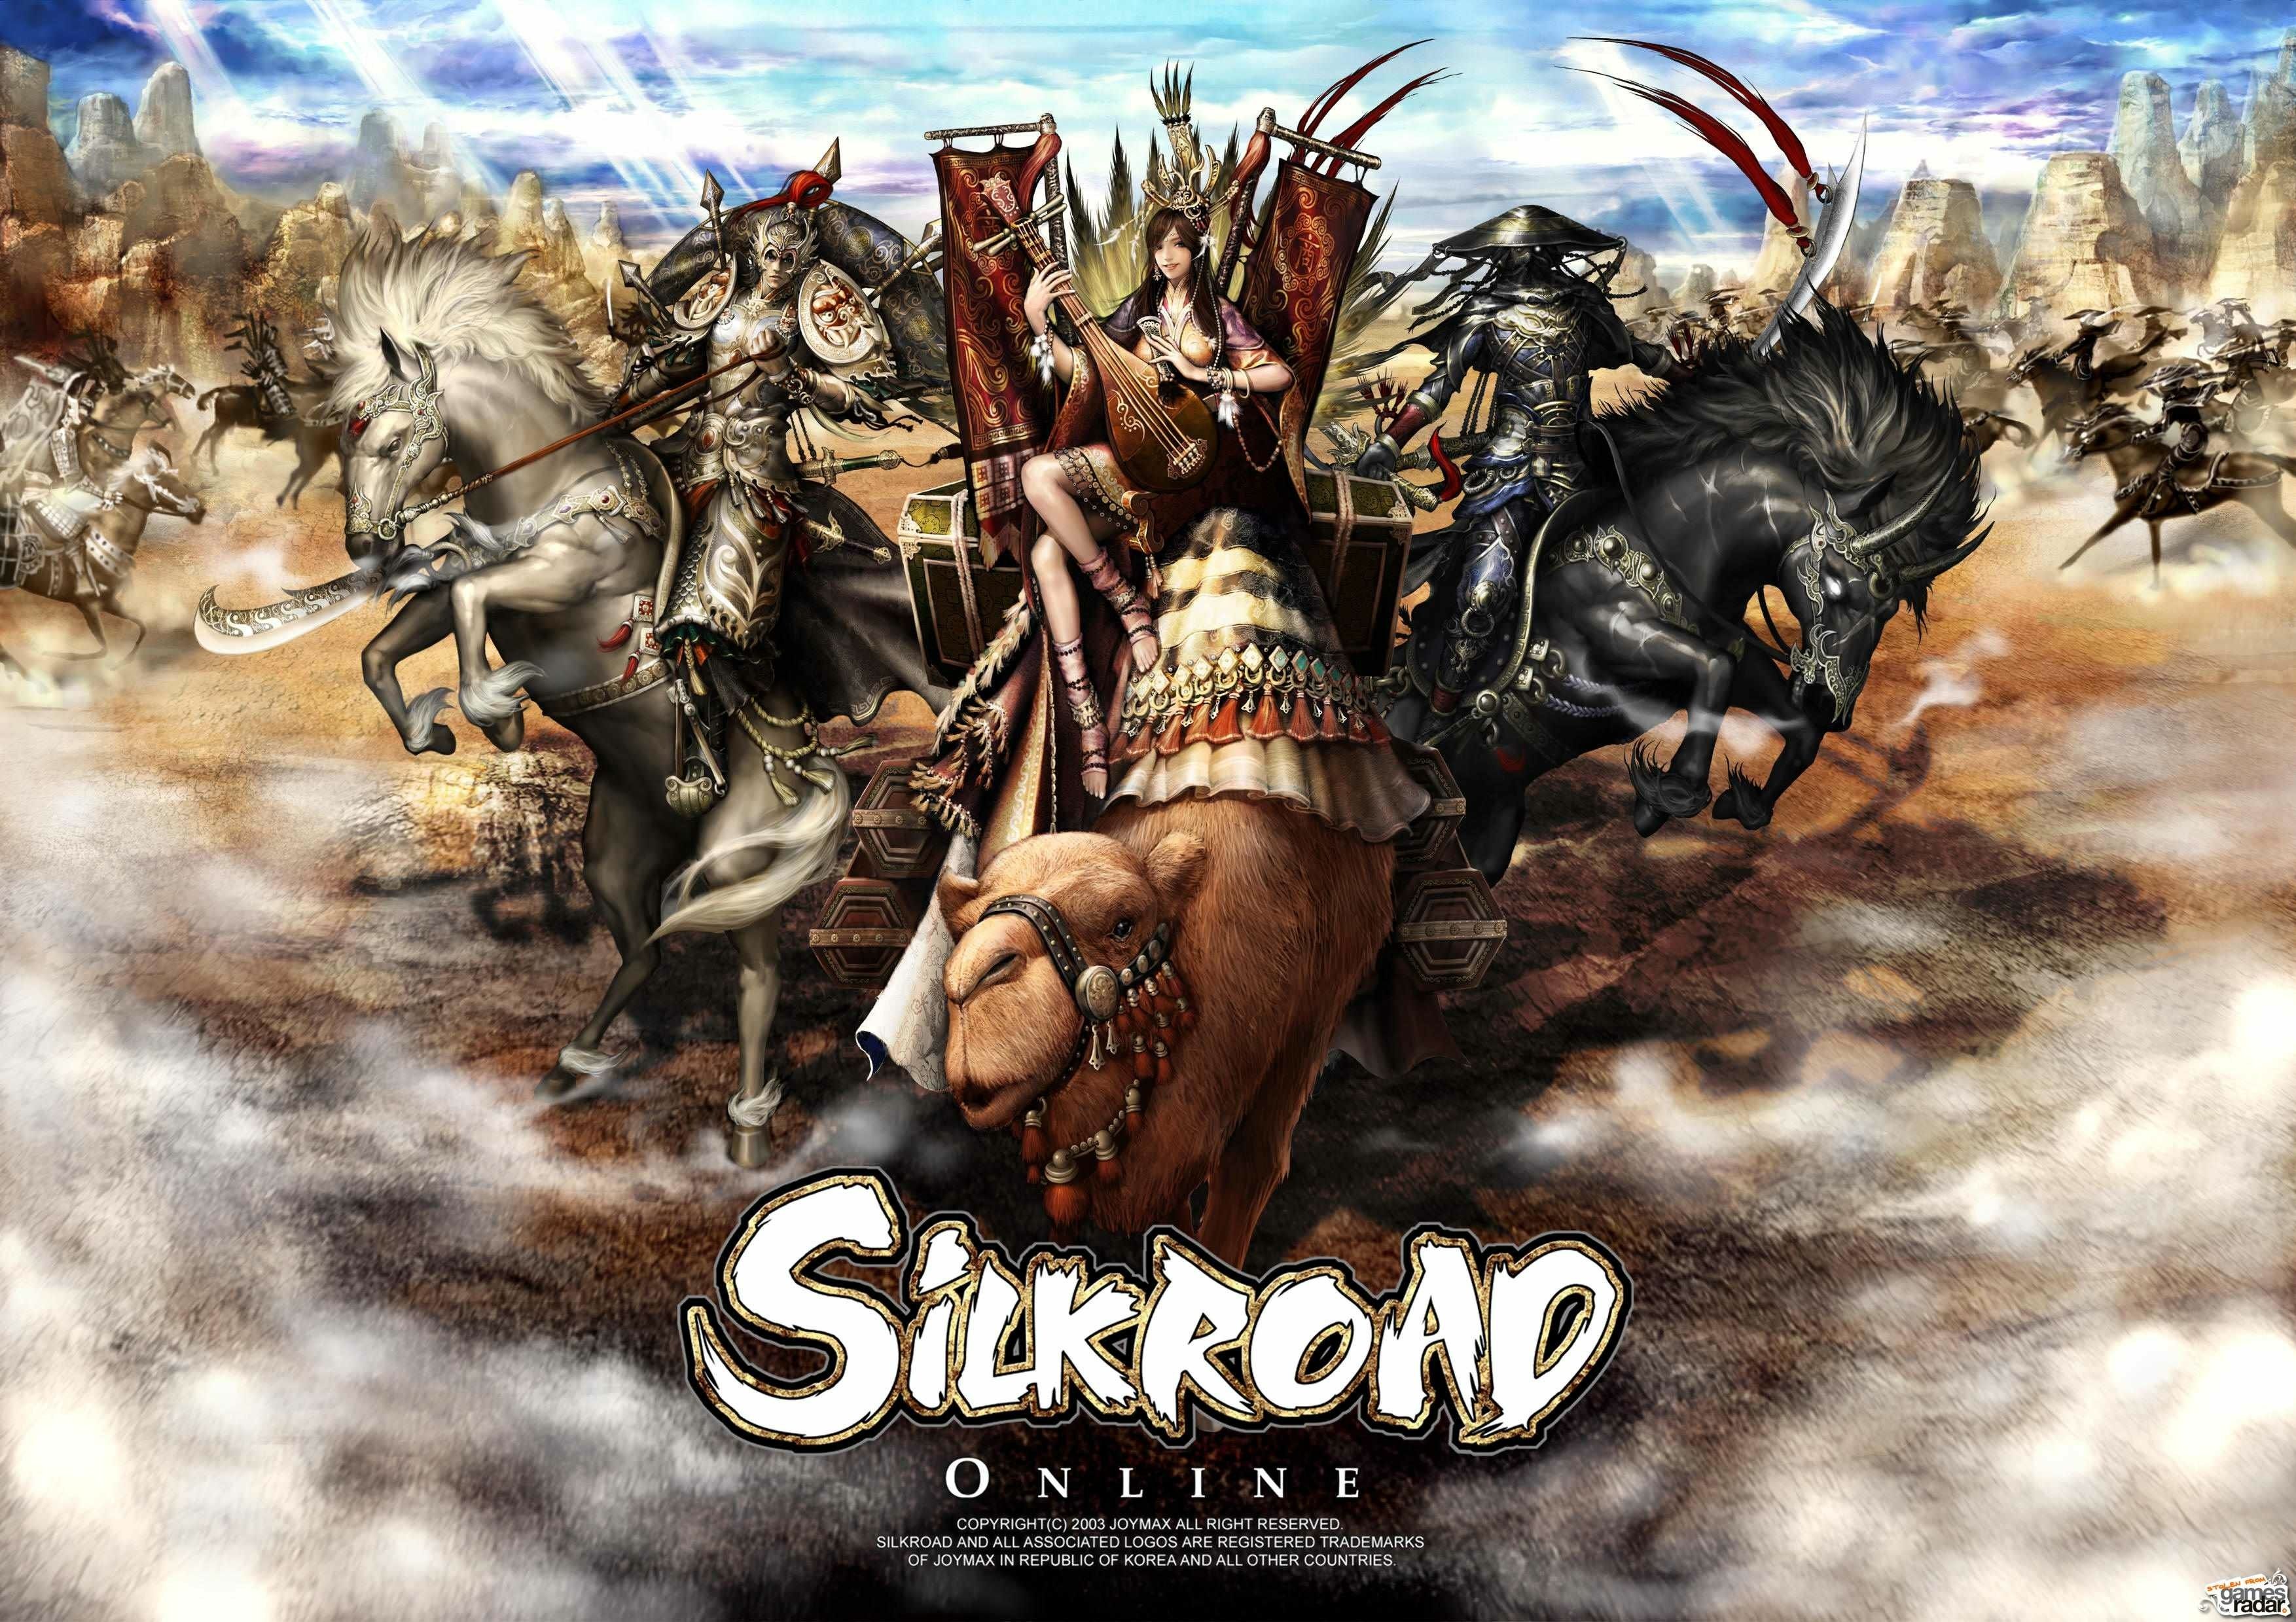 silkroad, Online, Mmo, Rpg, Fantasy, Adventure, Warrior Wallpaper HD / Desktop and Mobile Background